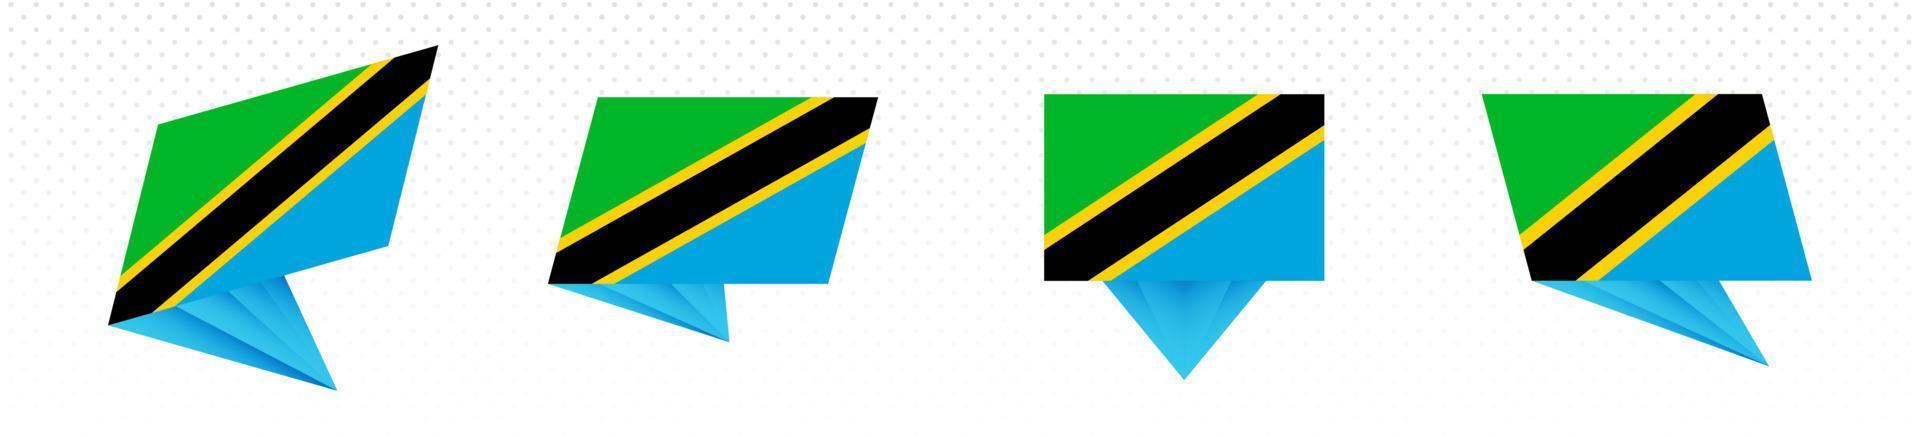 Flagge von Tansania im modernen abstrakten Design, Flaggensatz. vektor